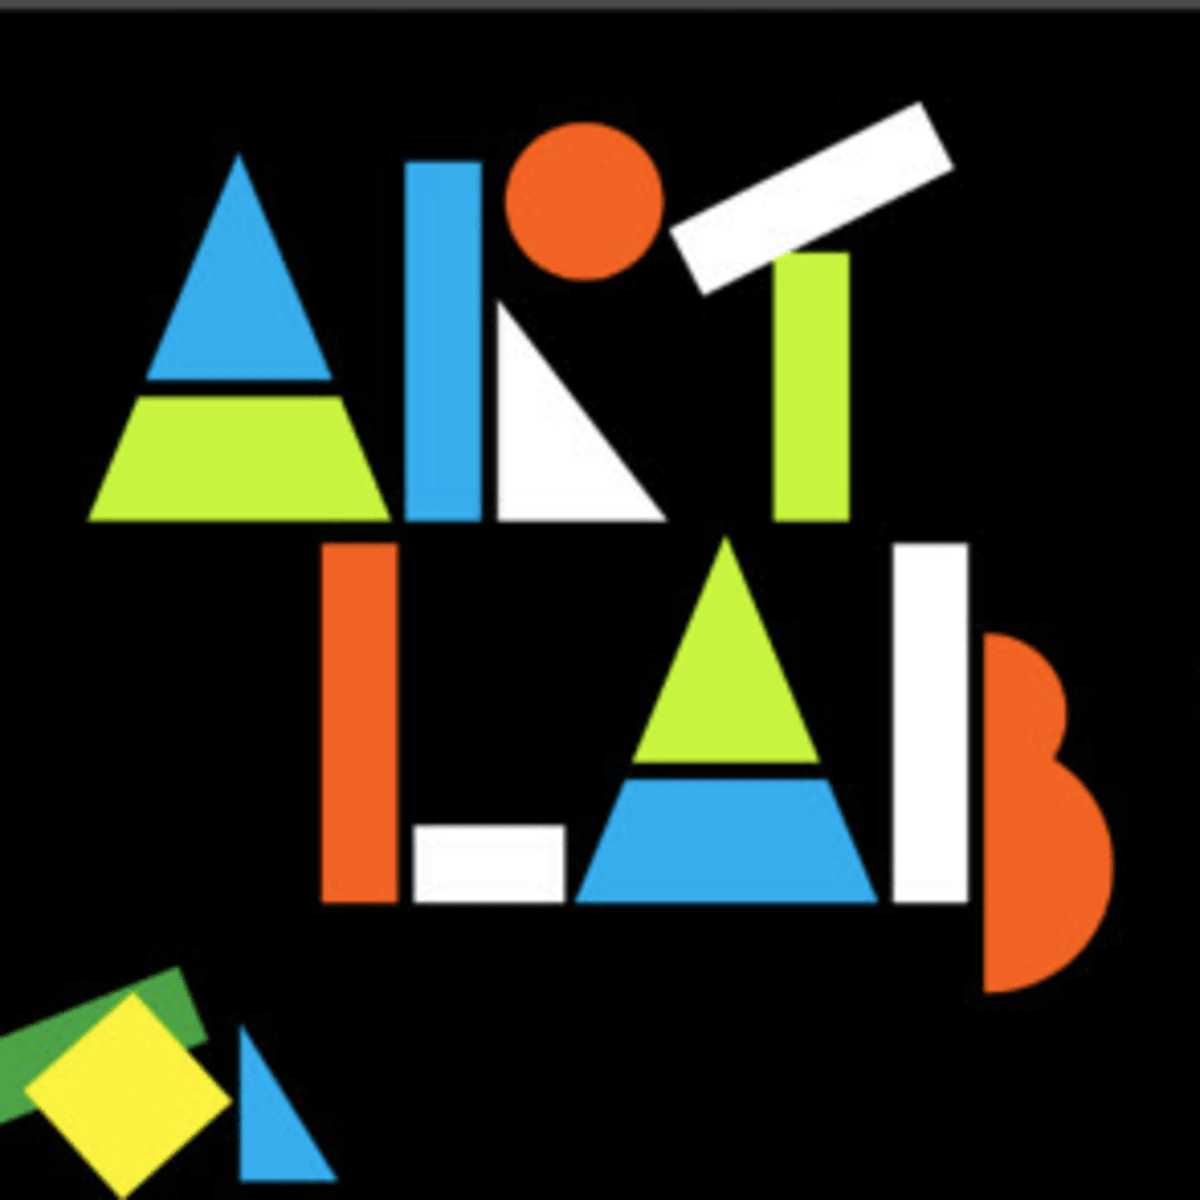 Isaac Besættelse efterligne MoMA Art Lab App - MomTrends